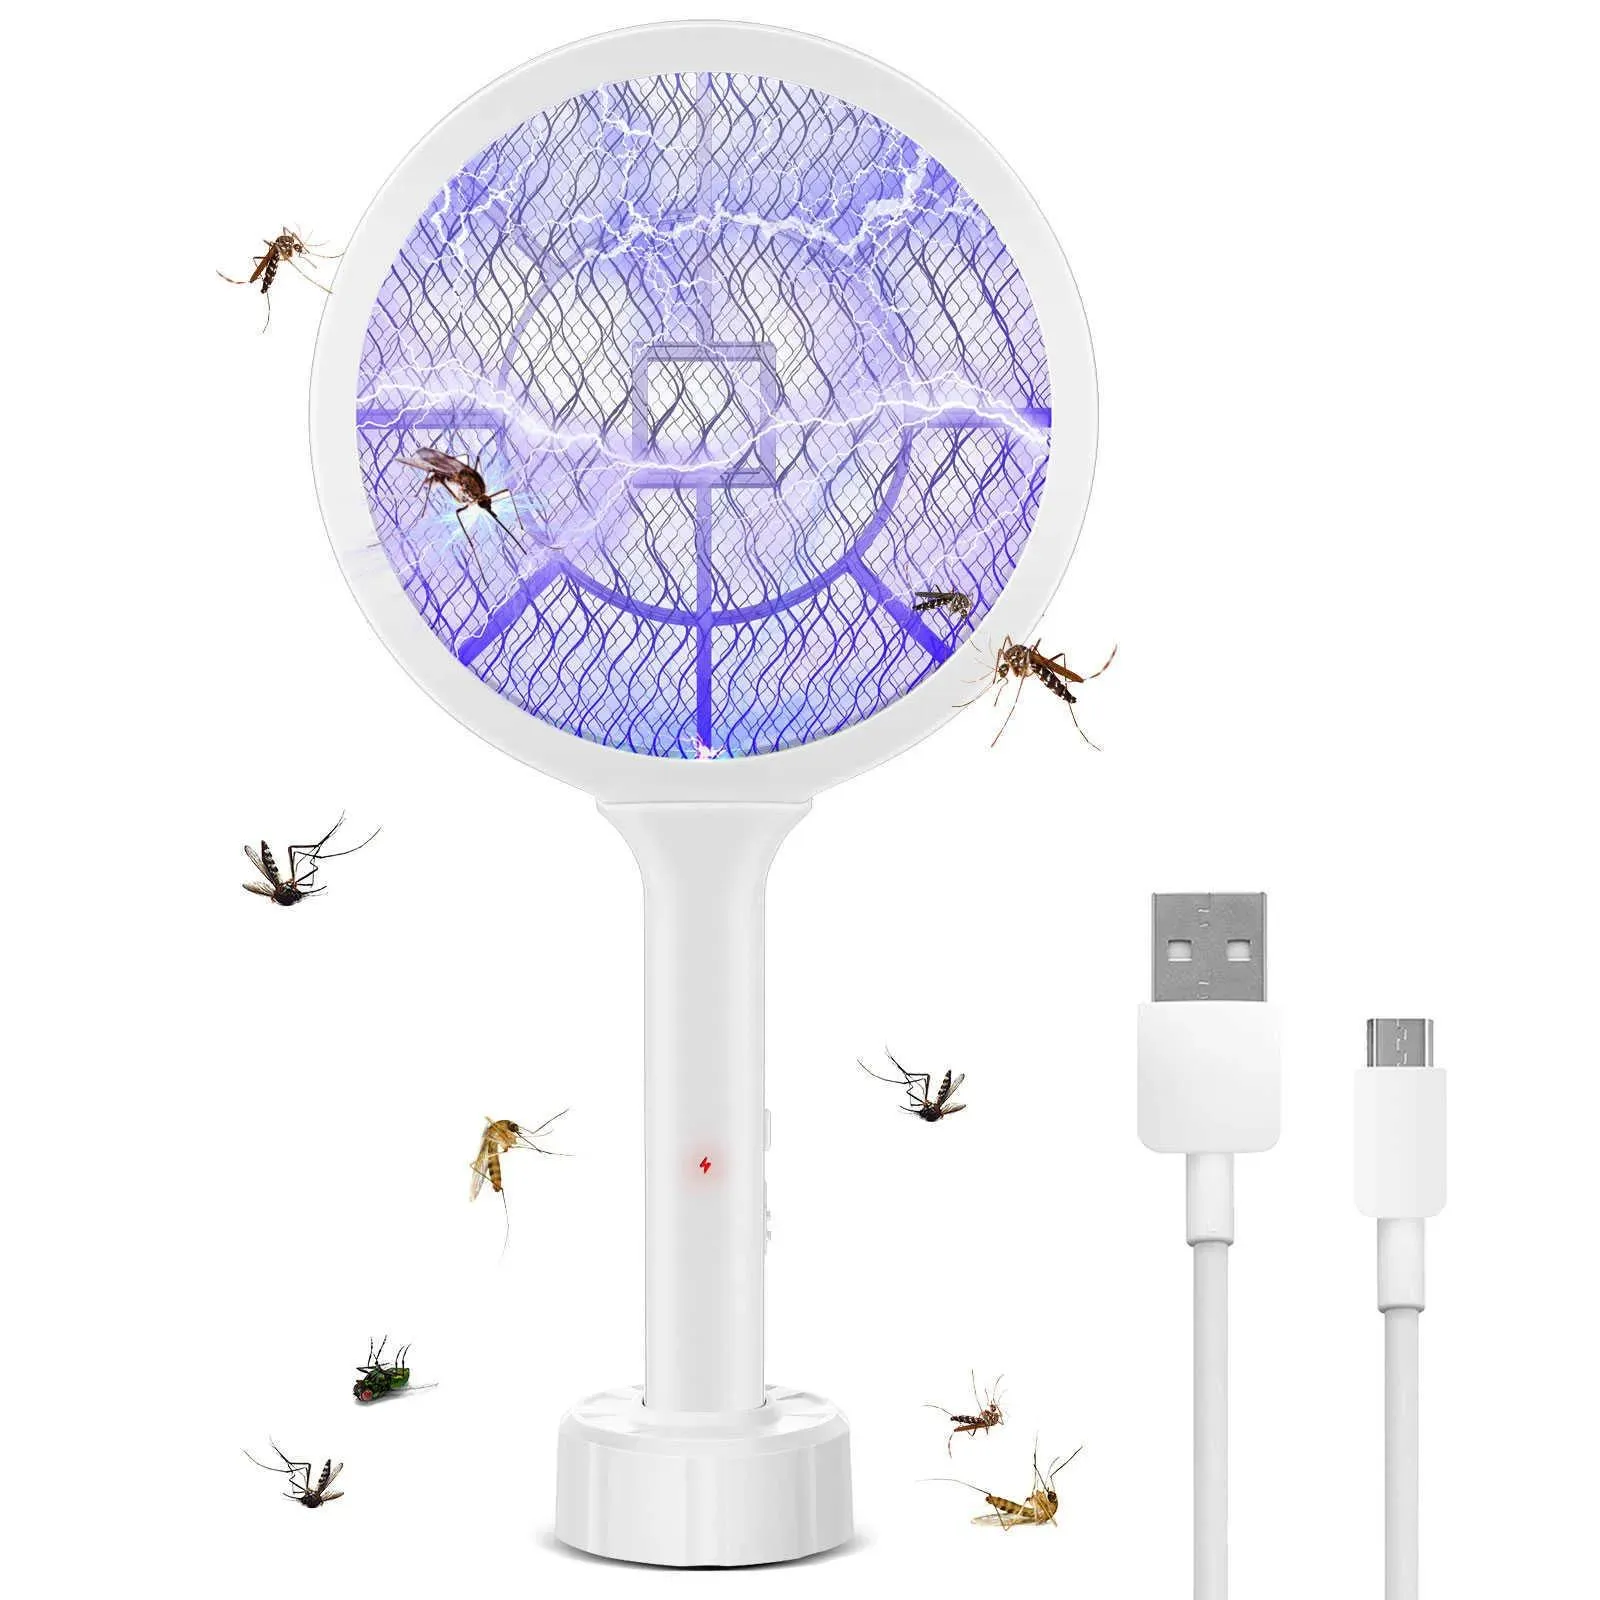 Contrôle de lutte antiparasitaire Professional Mosquito Killer Bat USB Racket électrique rechargeable tue les moustiques insectes de la mouche à mouche